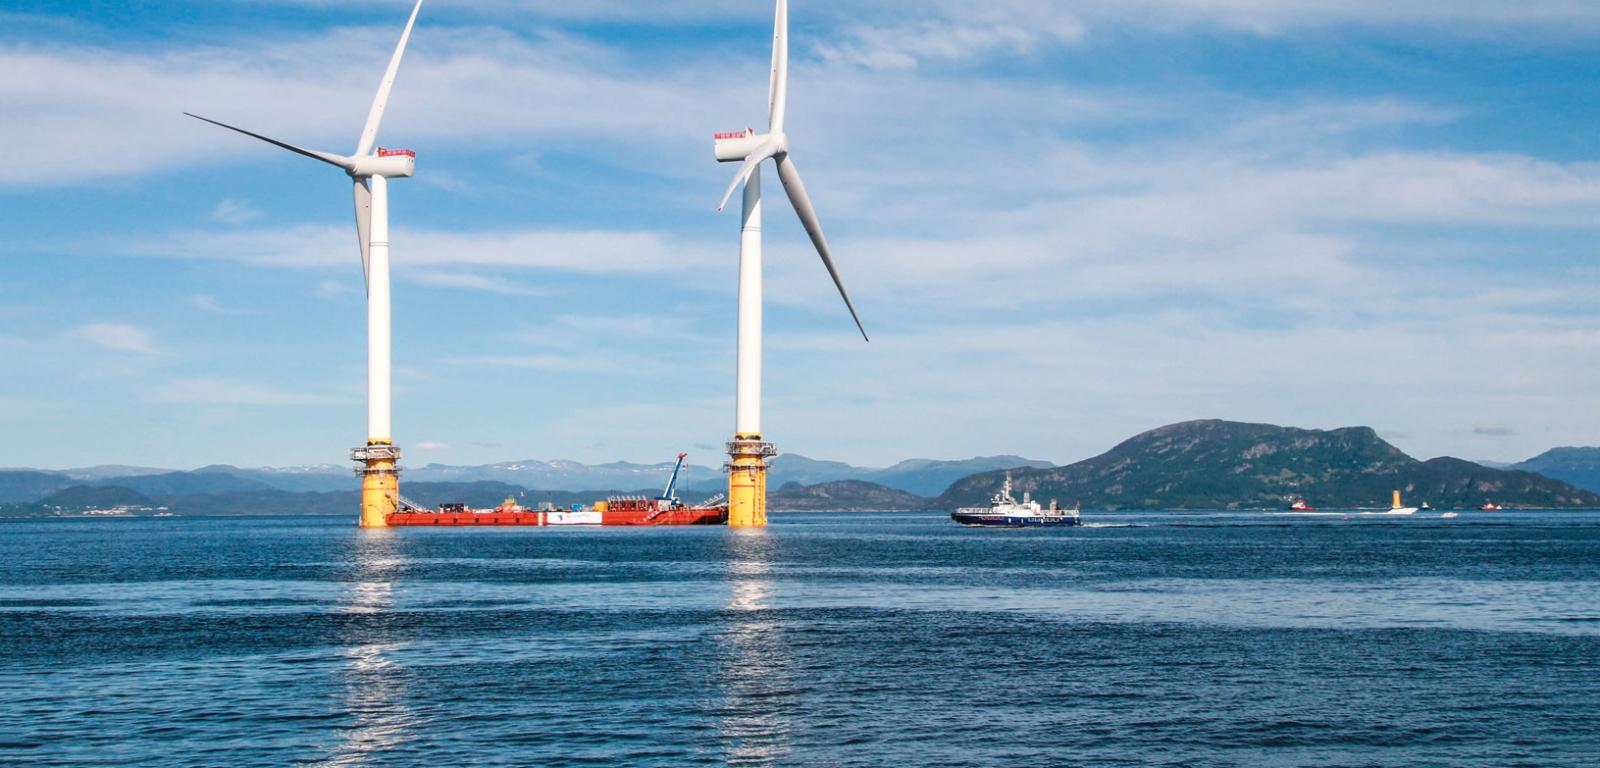 Dwie z pięciu turbin o mocy 6 MW każda, tworzących pierwszą na świecie pływającą farmę wiatrową Hywind Scotland Pilot Park, zlokalizowaną na Morzu Północnym. Turbiny mierzą 176 m, z czego 98 m wystaje ponad wodę. Długość łopat wynosi 77 m.